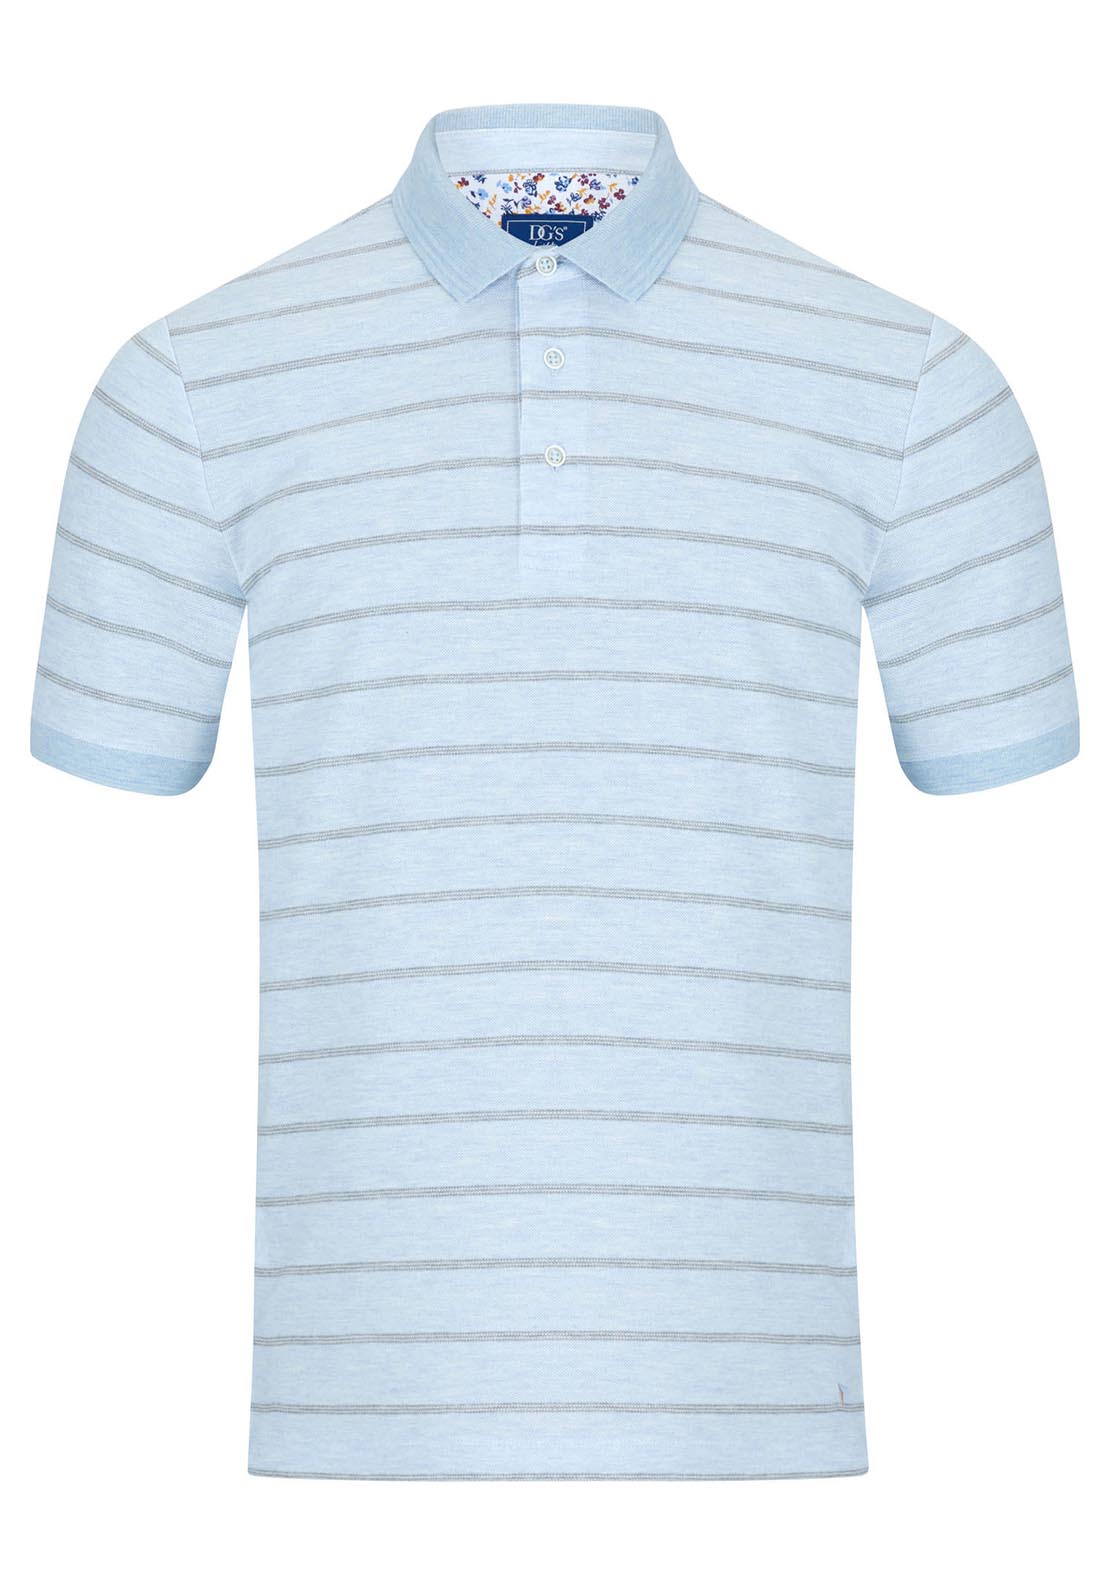 Drifter Short Sleeve Polo Shirt - Blue 1 Shaws Department Stores